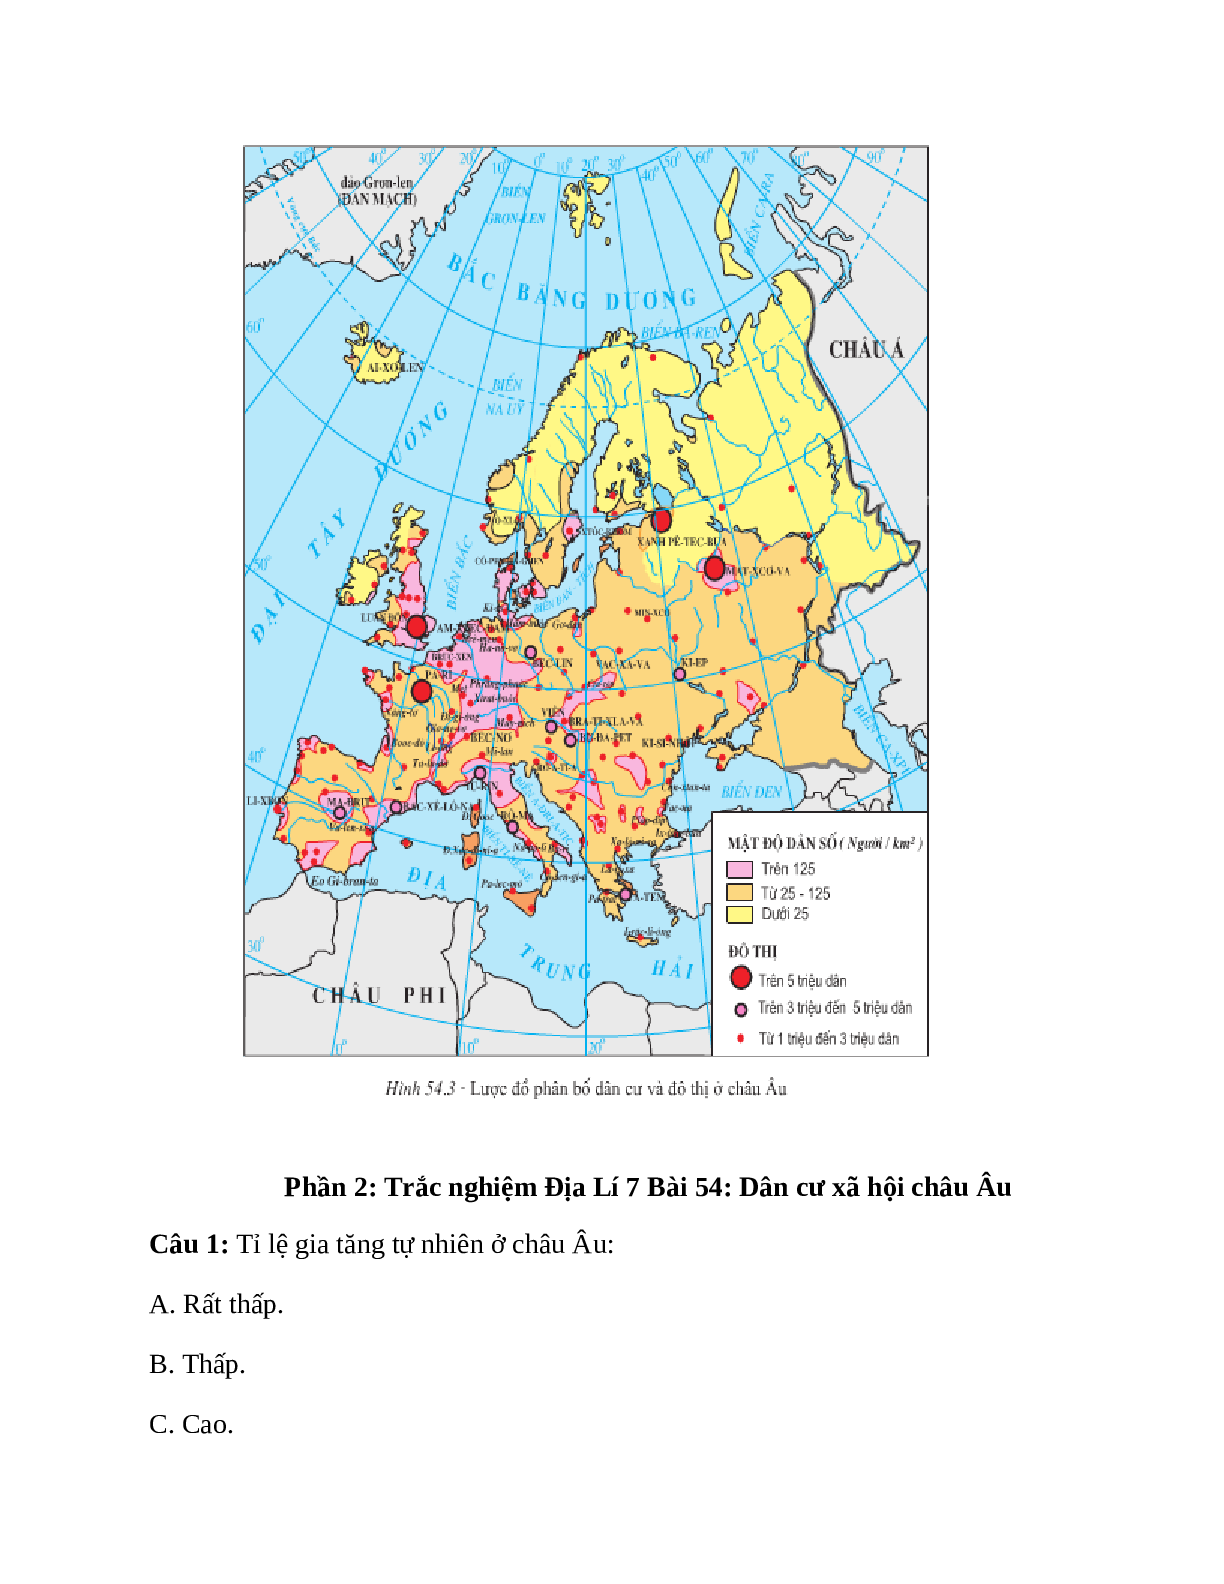 Địa Lí 7 Bài 54 (Lý thuyết và trắc nghiệm): Dân cư xã hội châu Âu (trang 5)